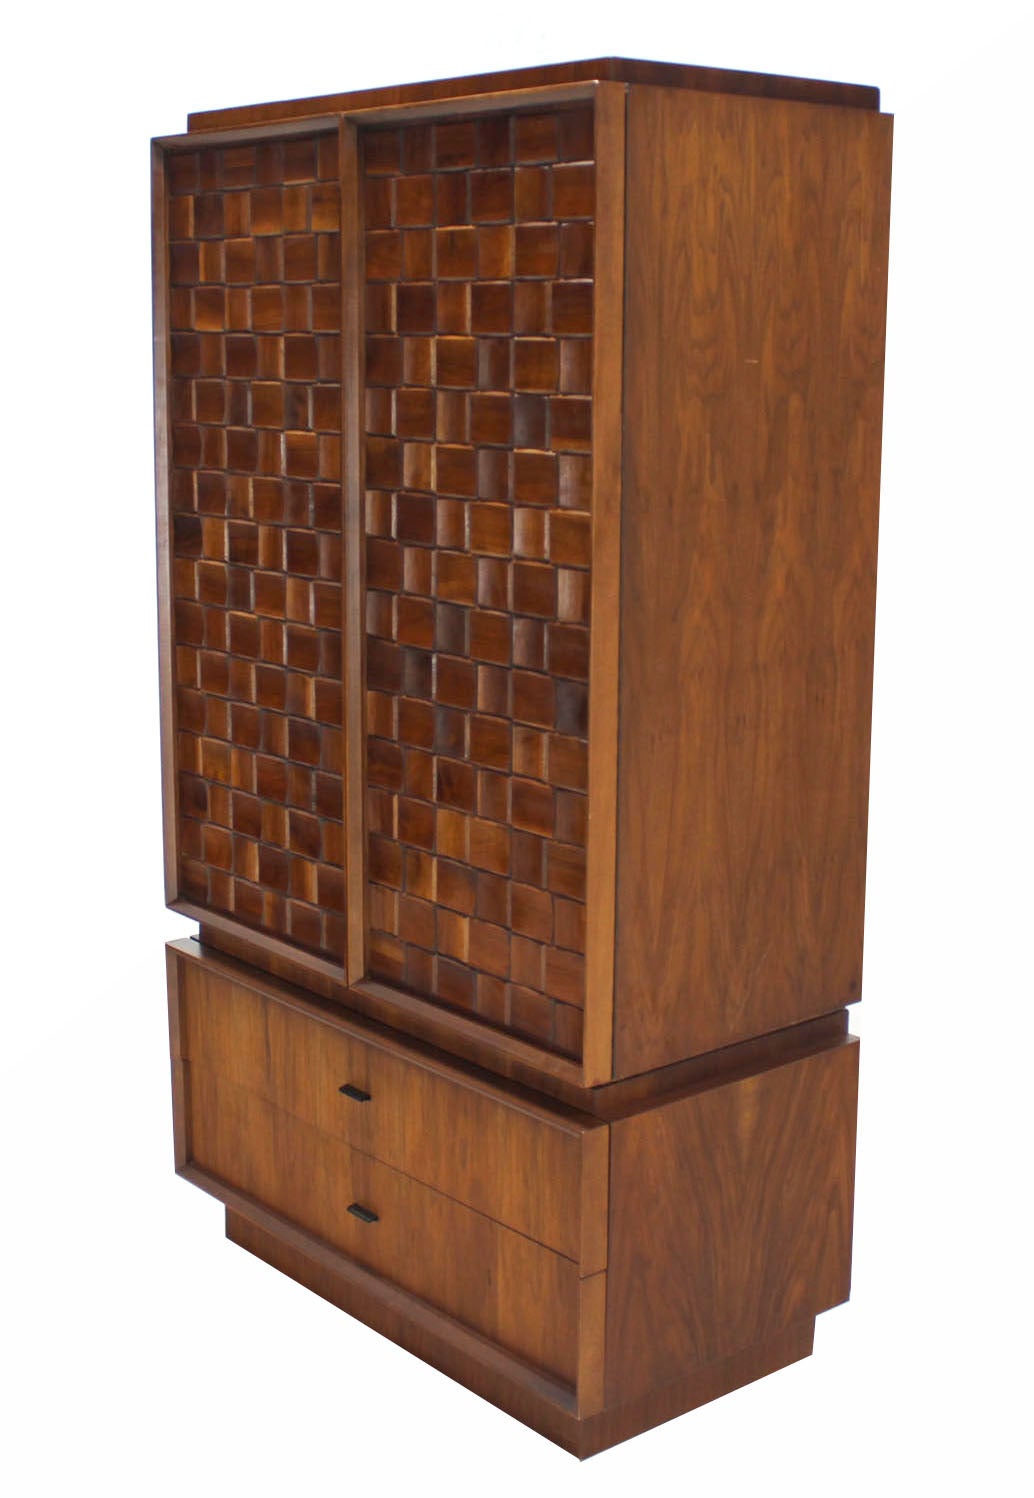 Carved lattice patch walnut Mid Century Modern gentlemen's chest dresser or cabinet in excellent original condition.